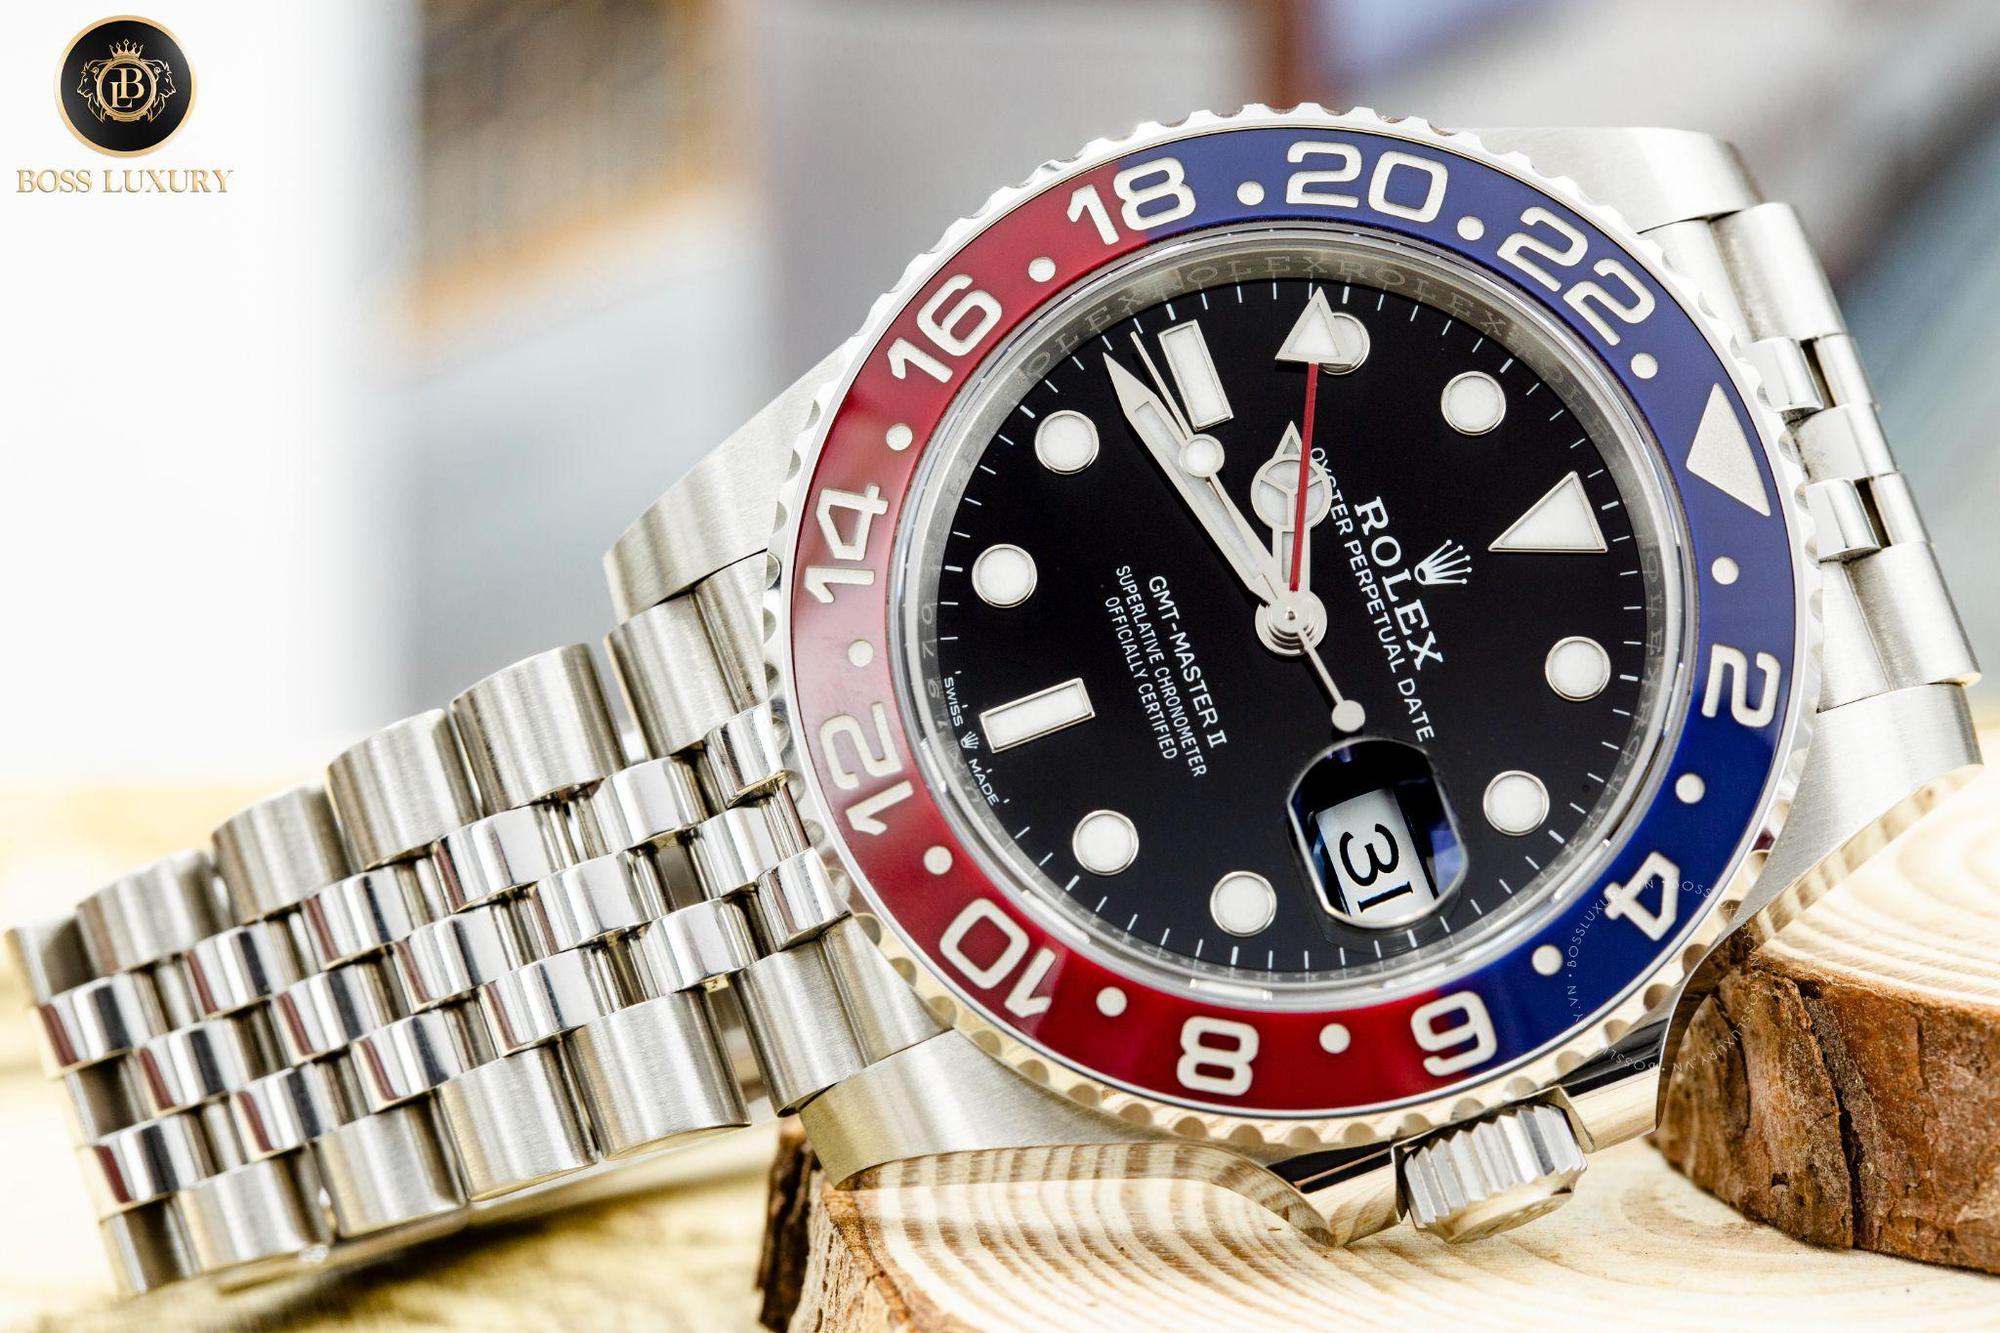 Top 5 mẫu đồng hồ Rolex bạn nên đầu tư trong năm 2022 theo Boss Luxury - Ảnh 4.